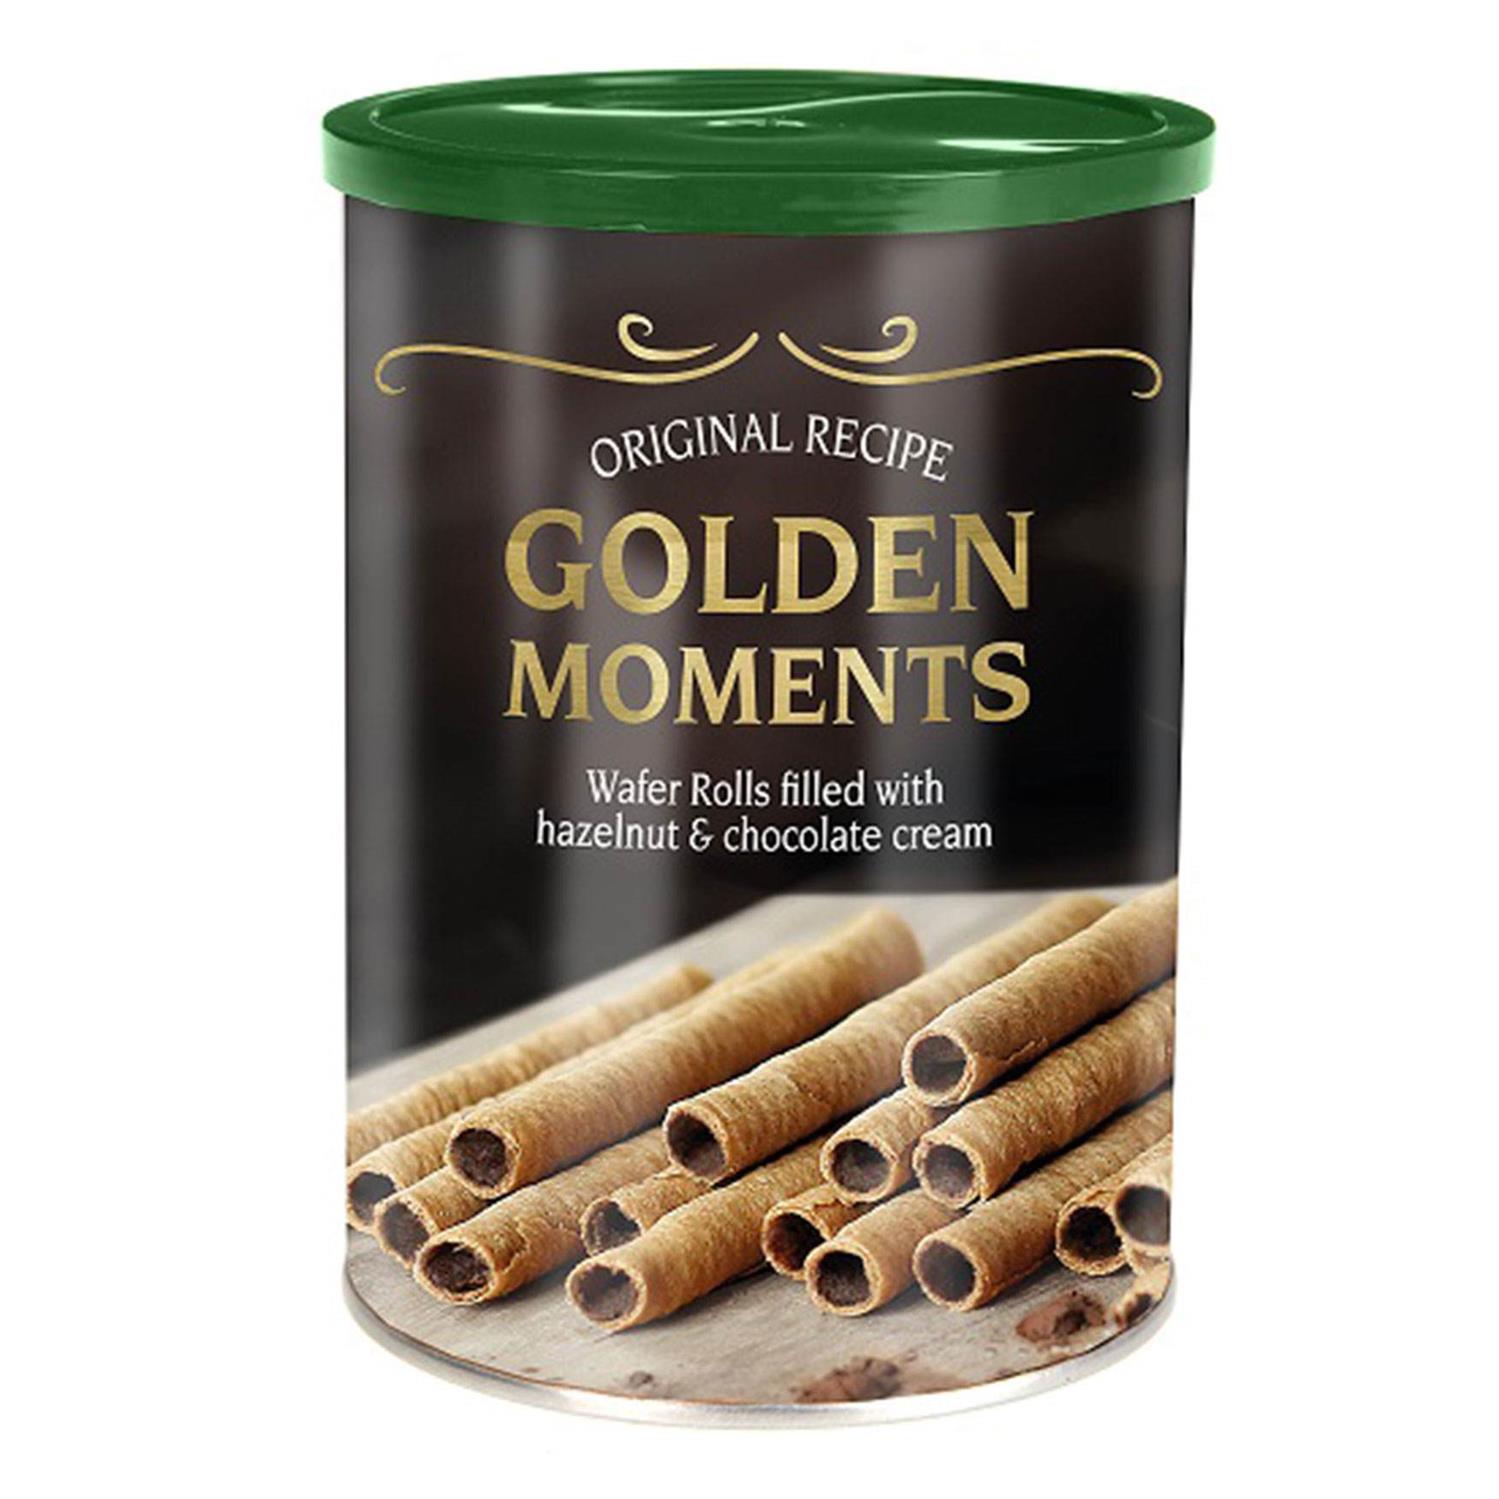 Вафельные трубочки с шоколадно-ореховым кремом Golden Moments hazelnut & chocolate creme (НИДЕРЛАНДЫ, 400 г)